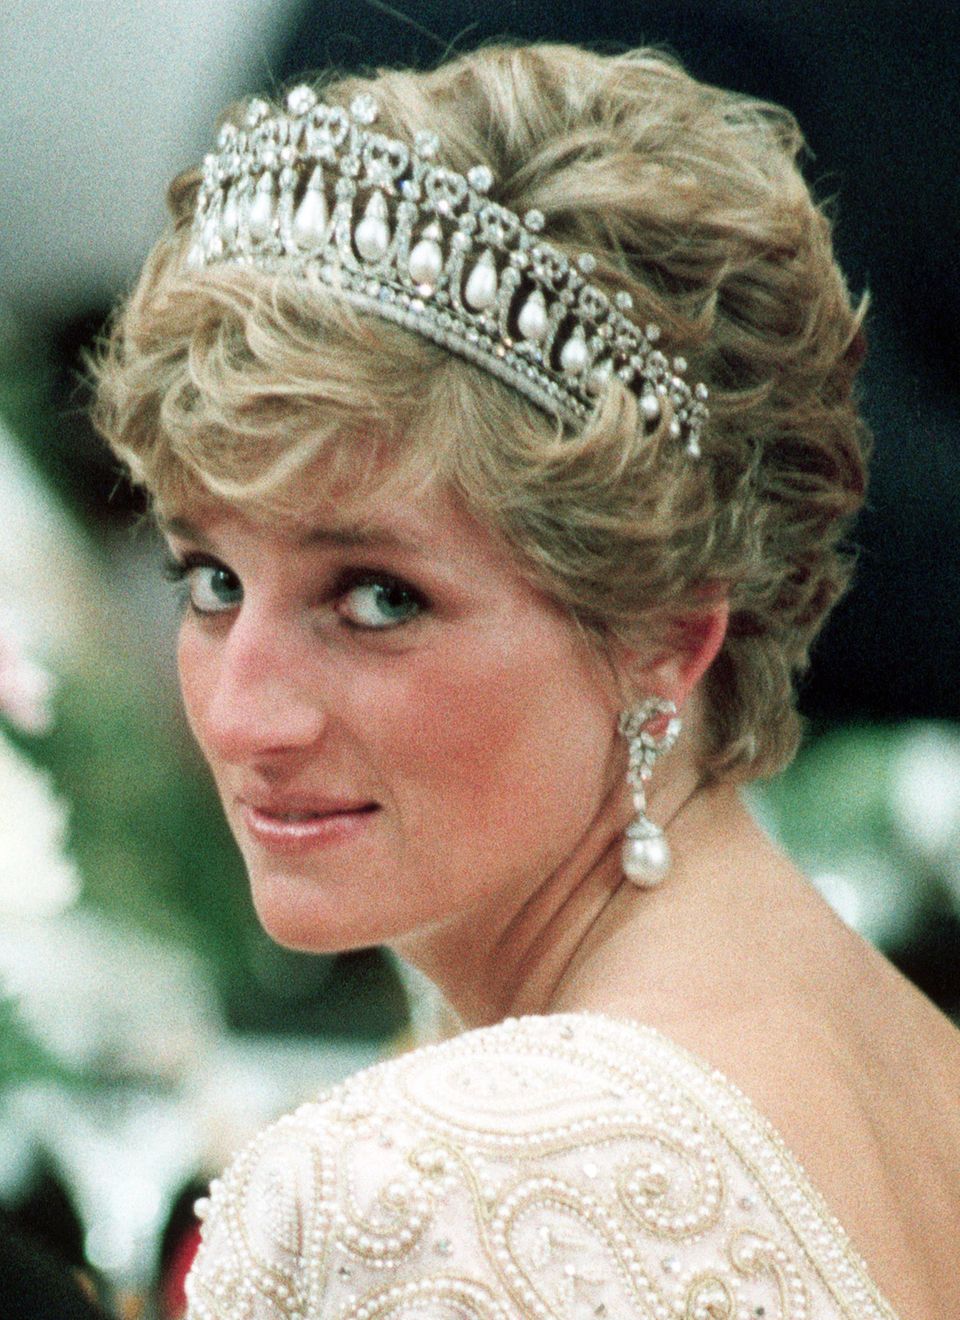 Als Hochzeitsgeschenk bekam Prinzessin Diana seinerzeit die "Queen Mary's Lover's Knot"-Tiara von ihrer Schwiegermutter, Queen Elizabeth.  Dies Diadem wurde ursprünglich 1914 für Queen Mary angefertigt, die das "Cambridge Lover's Knot"-Diadem ihrer Tante sehr bewunderte, und ist mit all den Perlen und diamantenen Liebesknoten so schwer, dass Diana angeblich Kopfschmerzen vom Tragen bekam.